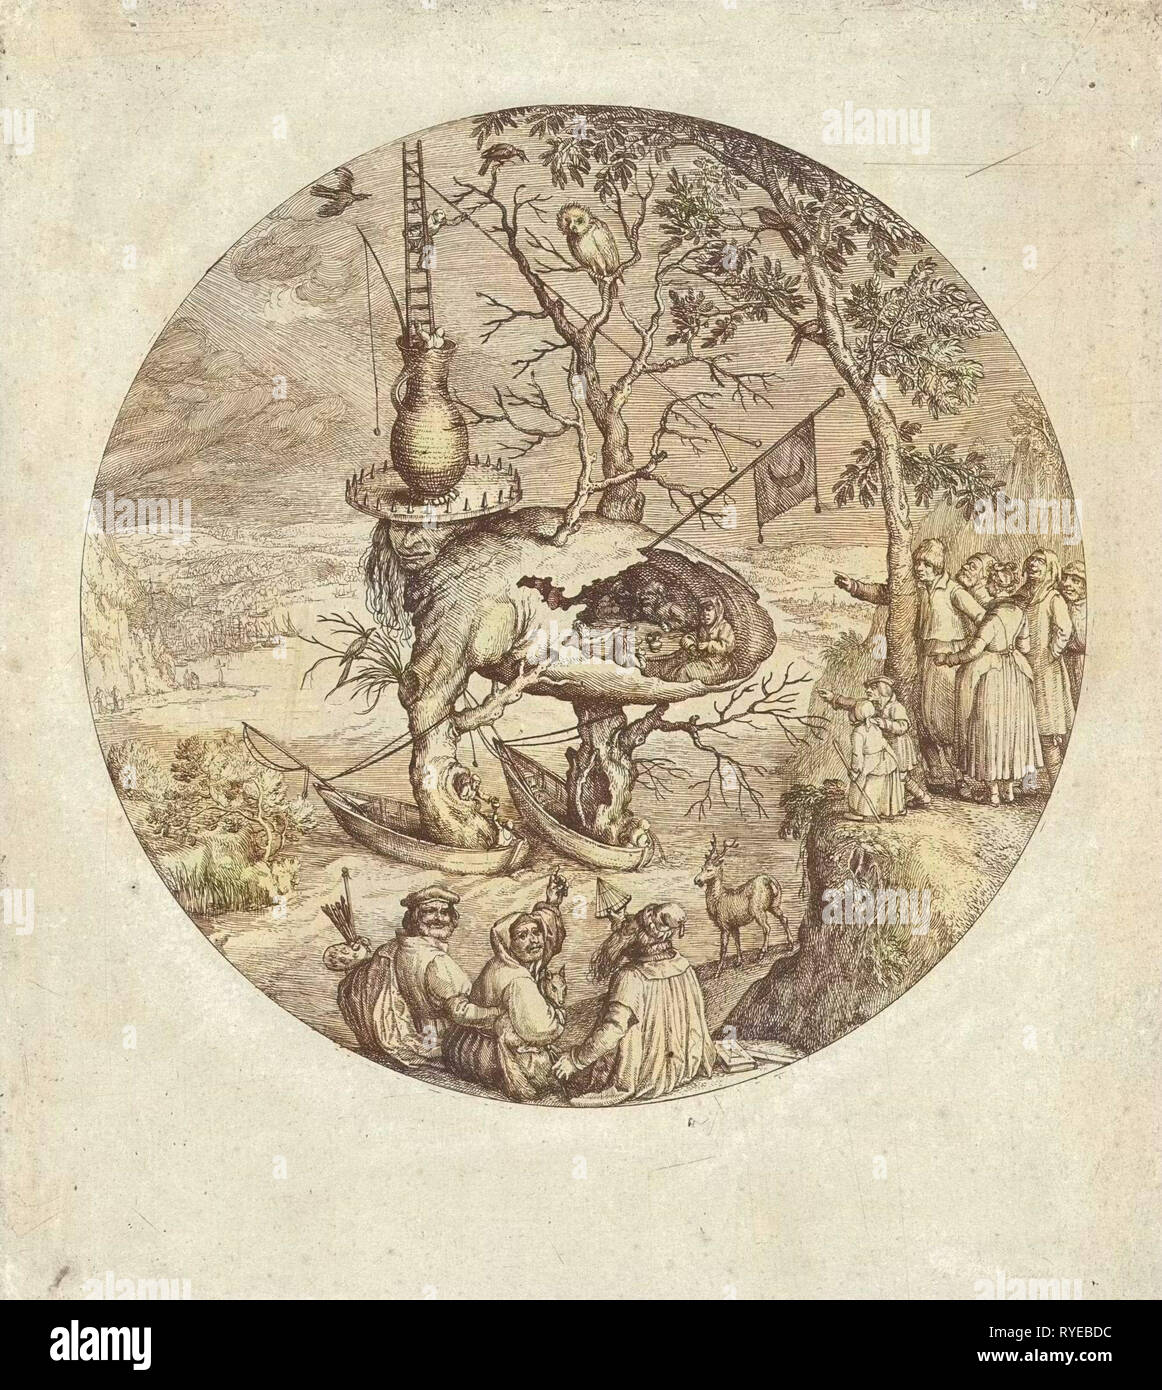 L'uomo albero, anonimo, Jheronimus Bosch, 1550 - 1575 Foto Stock